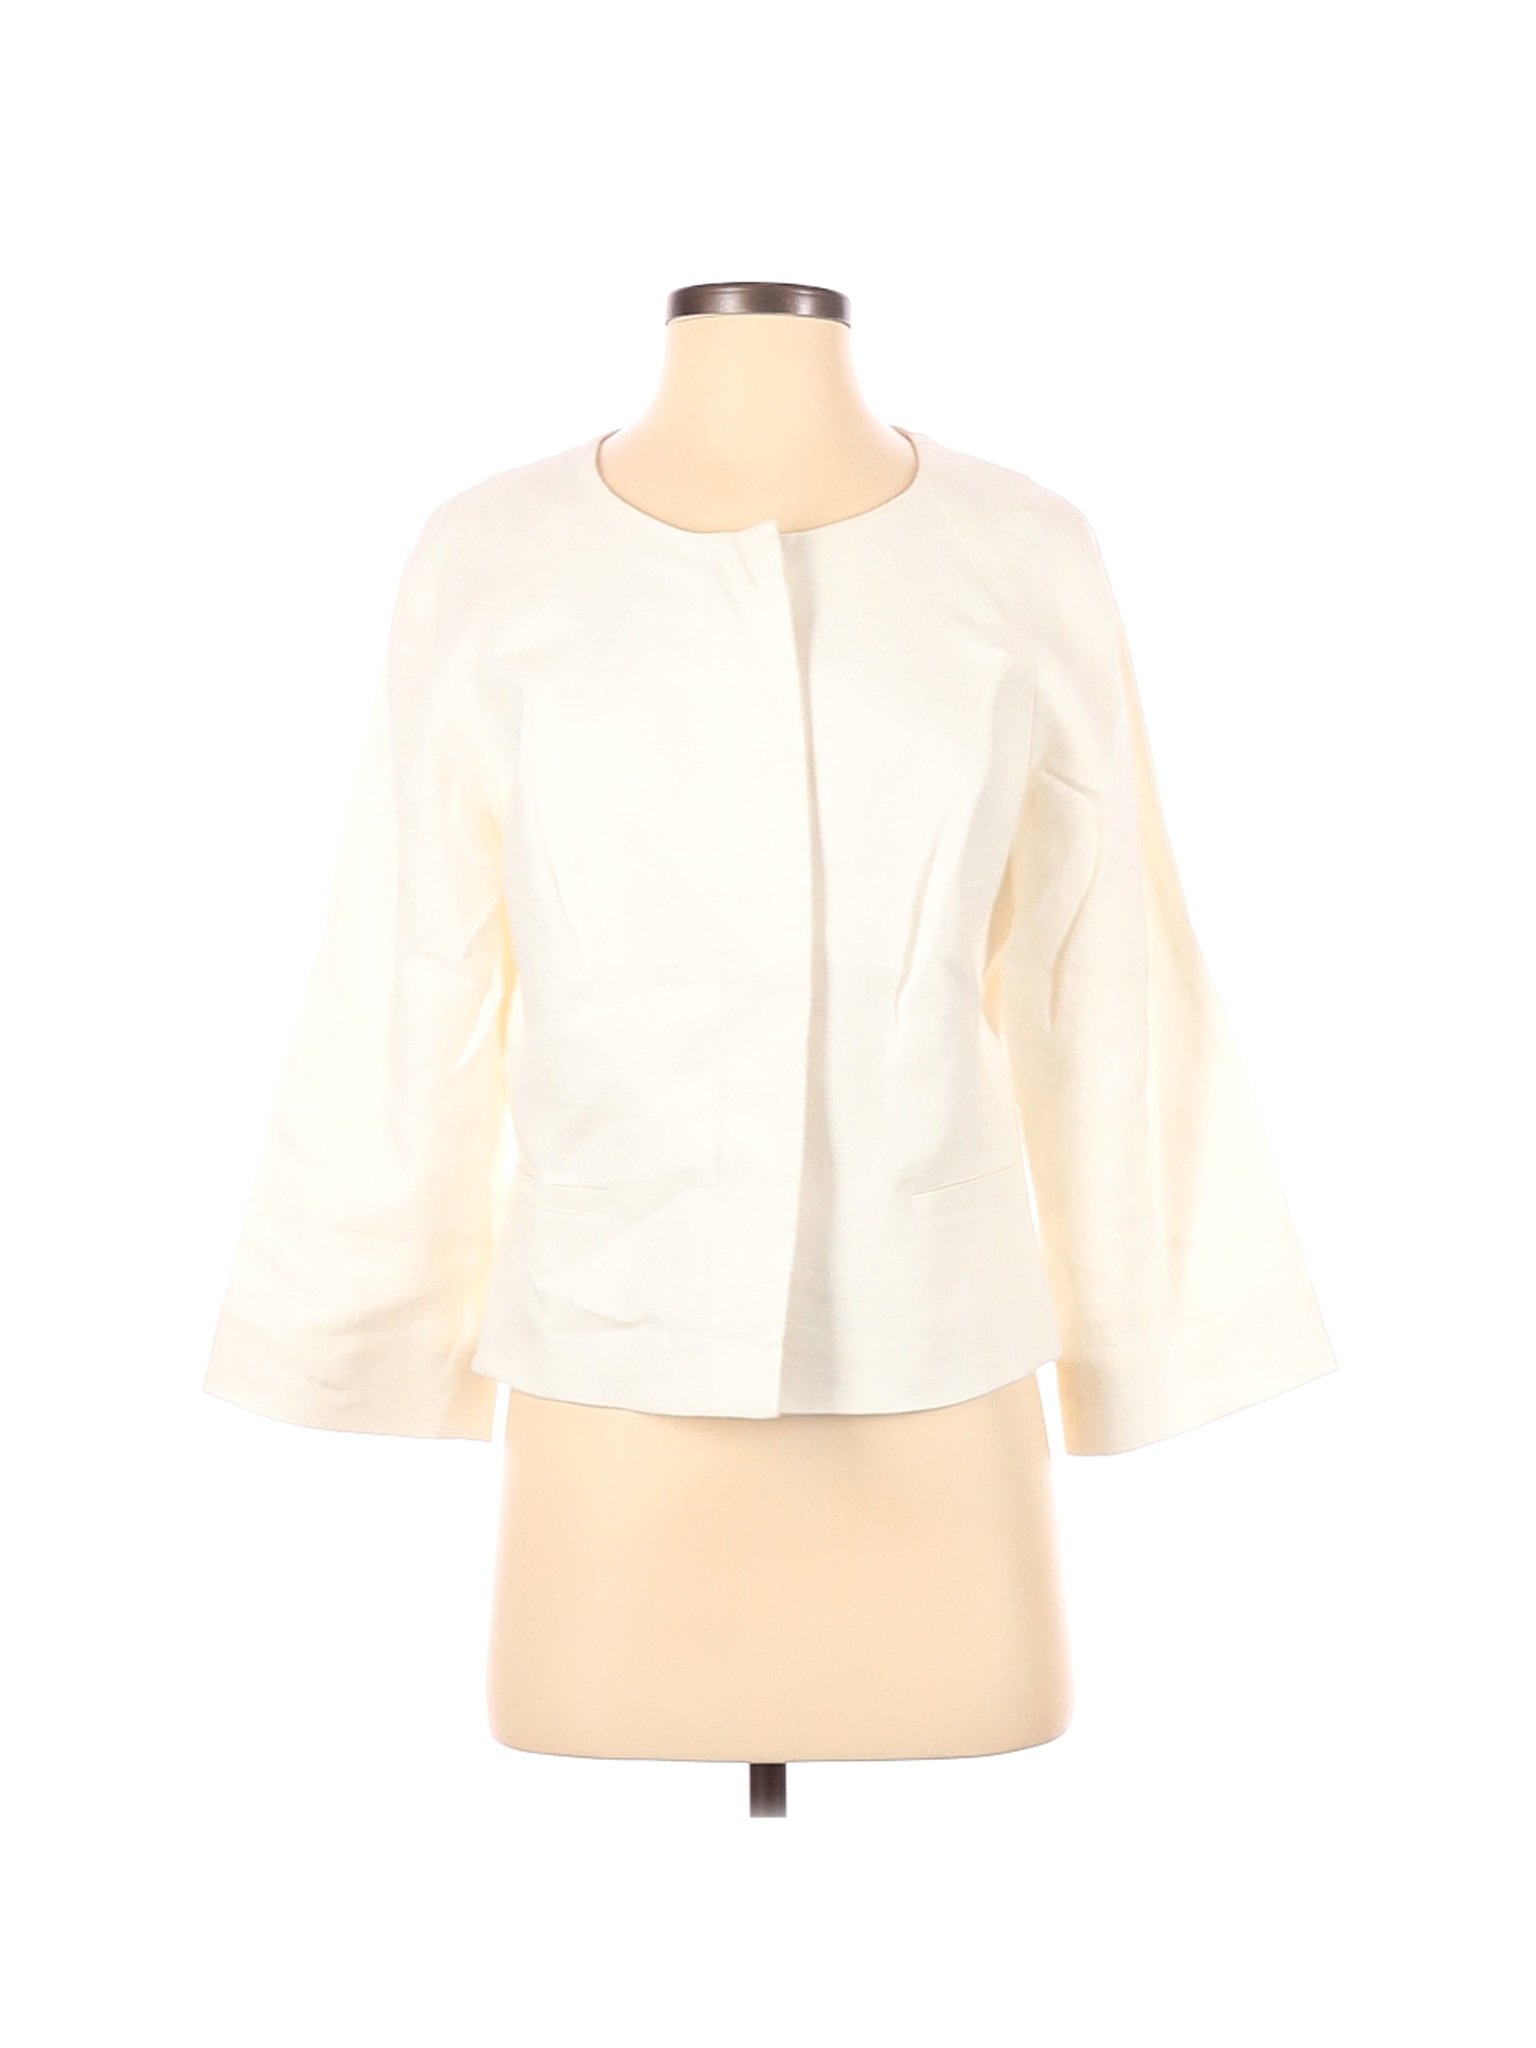 Anne Klein Women Ivory Jacket 6 | eBay